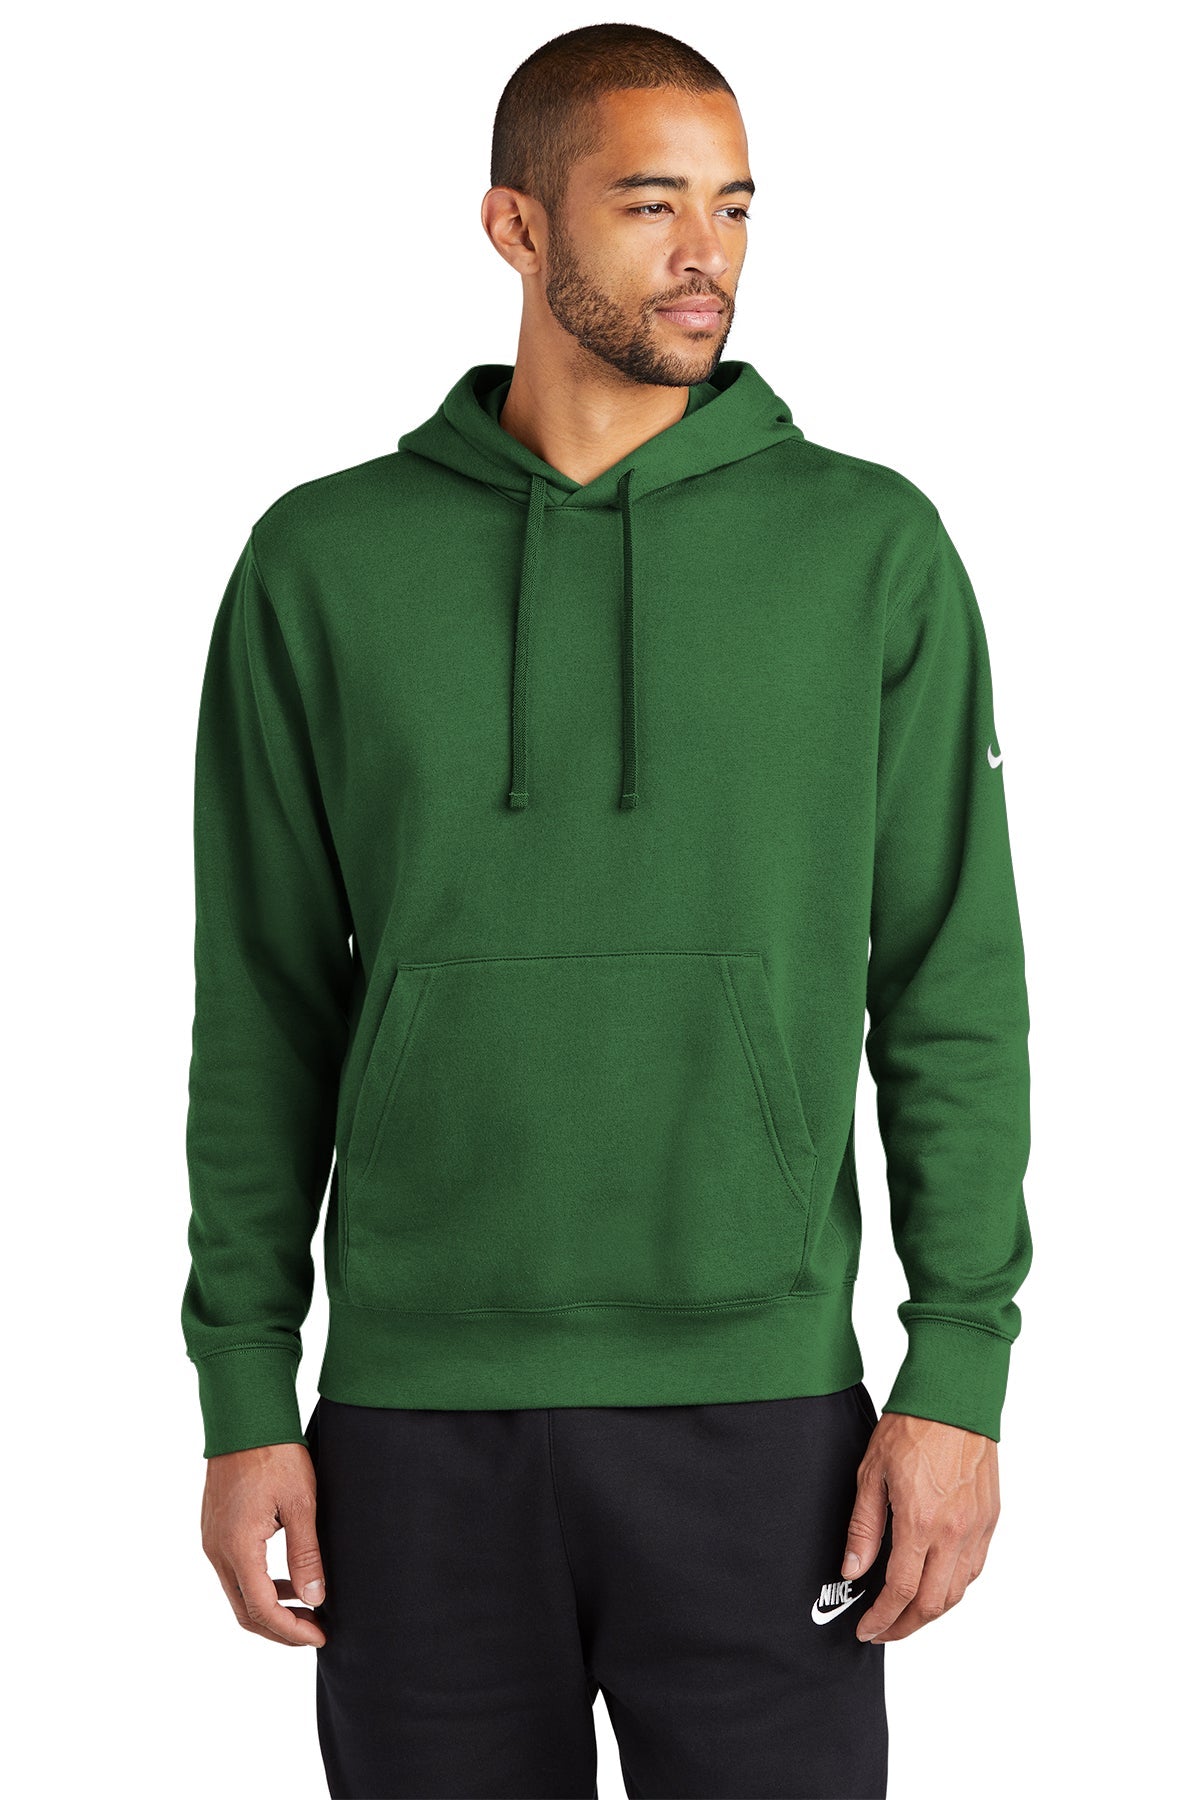 meesteres opladen Behoefte aan Custom Nike Club Fleece Sleeve Swoosh Pullover Hoodie Green – LEAD APPAREL